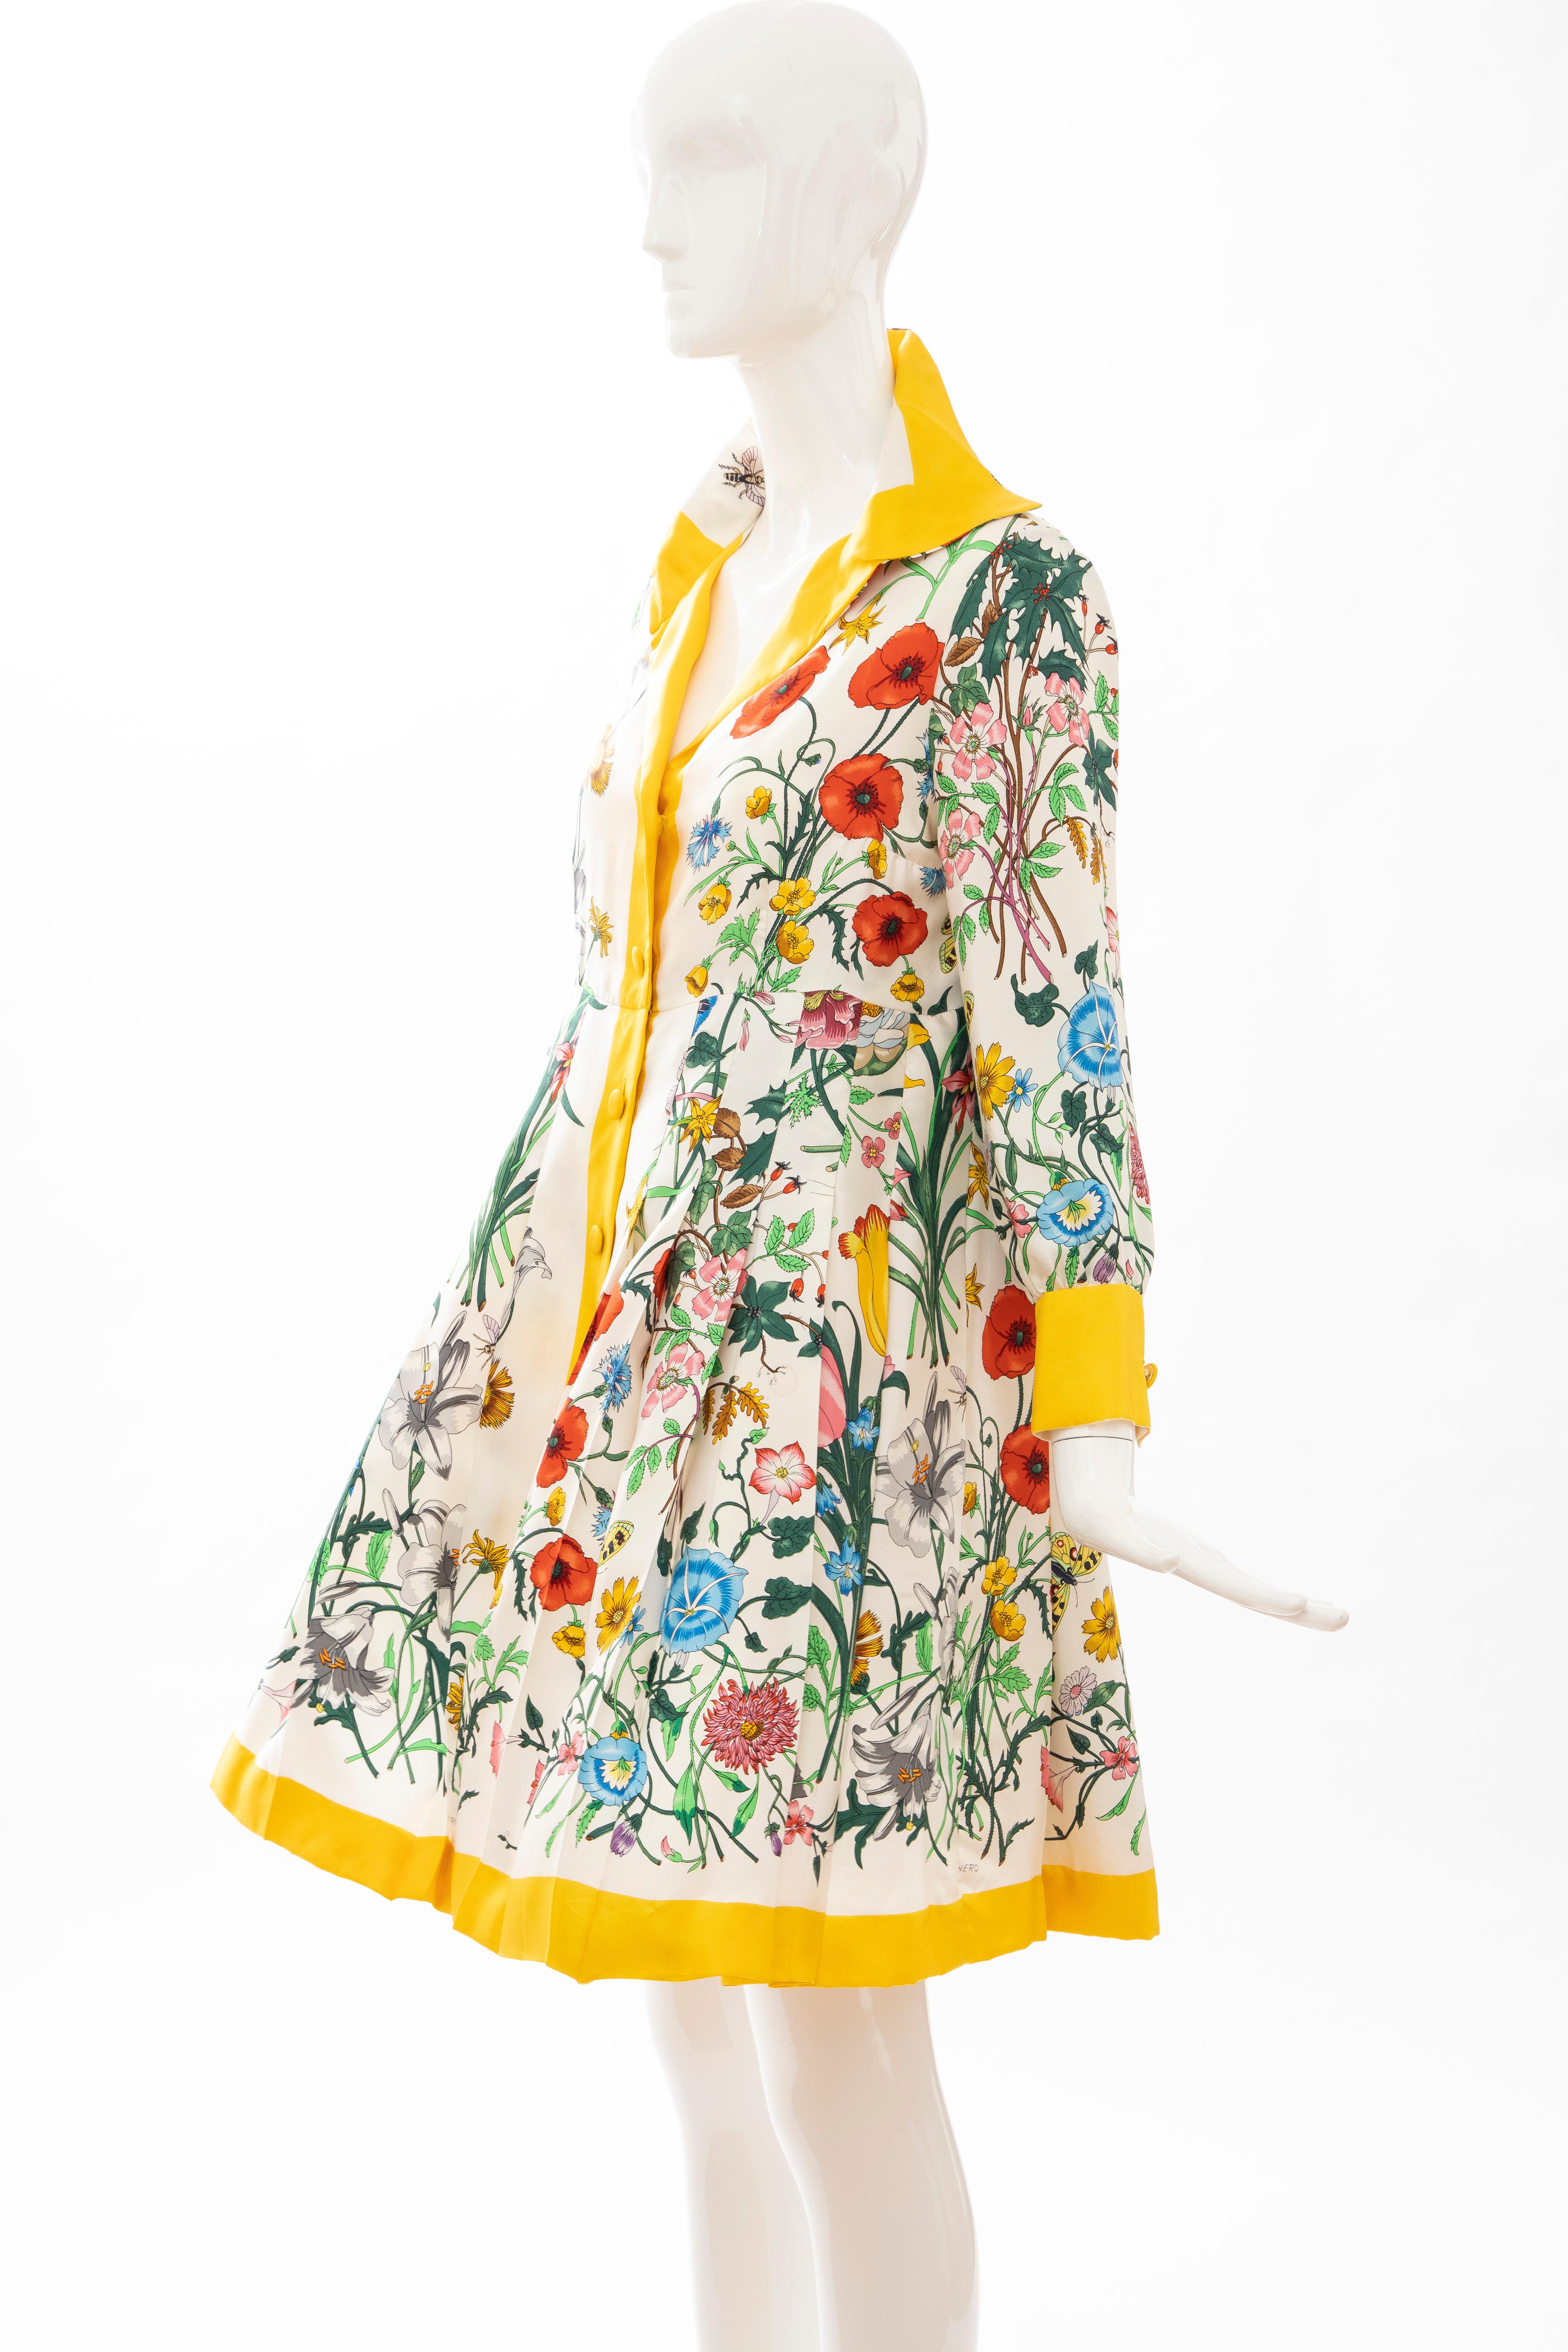 Gucci Vittorio Accornero Flora Fauna Screen Printed Silk Dress, Circa: 1970's 8